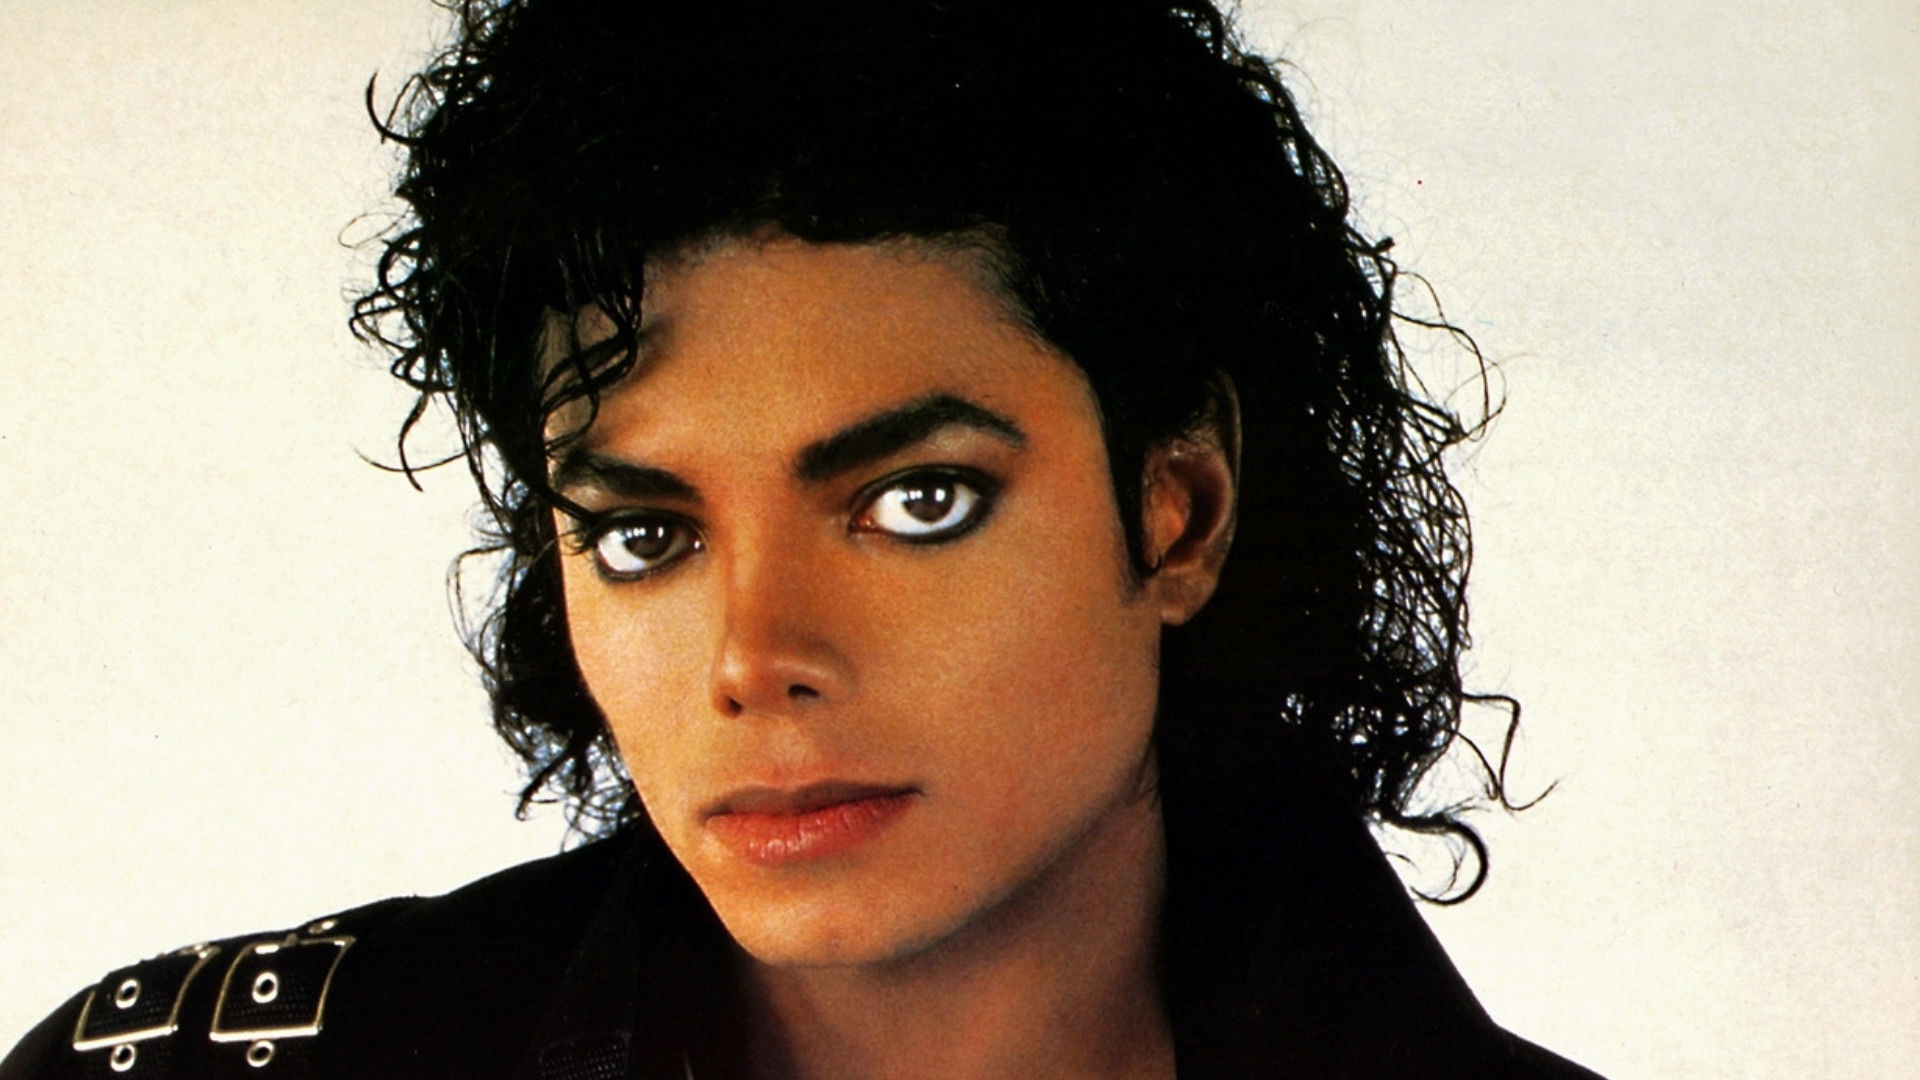 La Historia Secreta de la Música: Michael Jackson (parte 6)